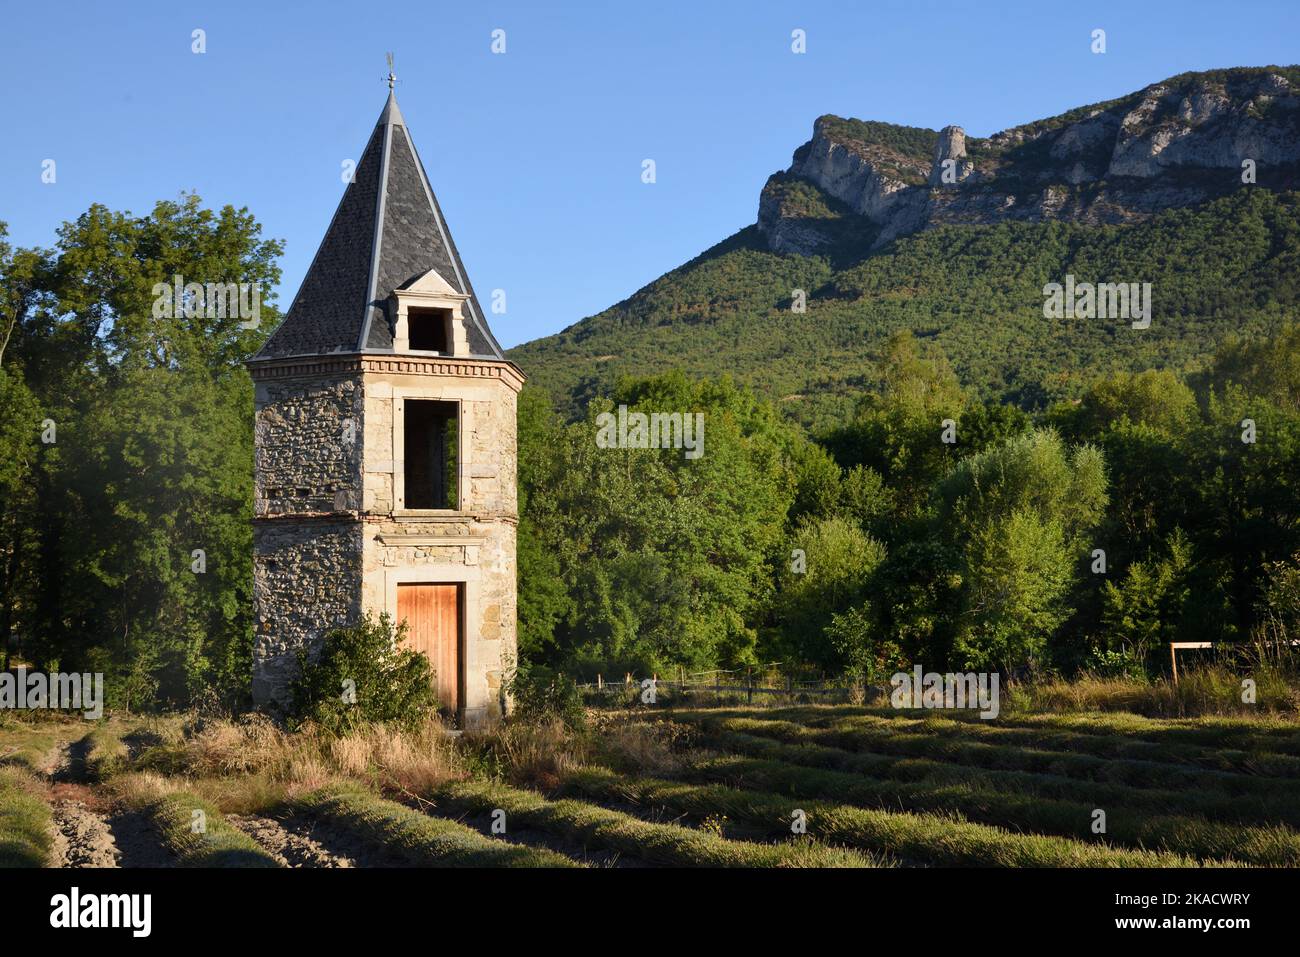 Folly, petite Maison ou Tour Maison Saou Drôme France de forme hexagonale Banque D'Images